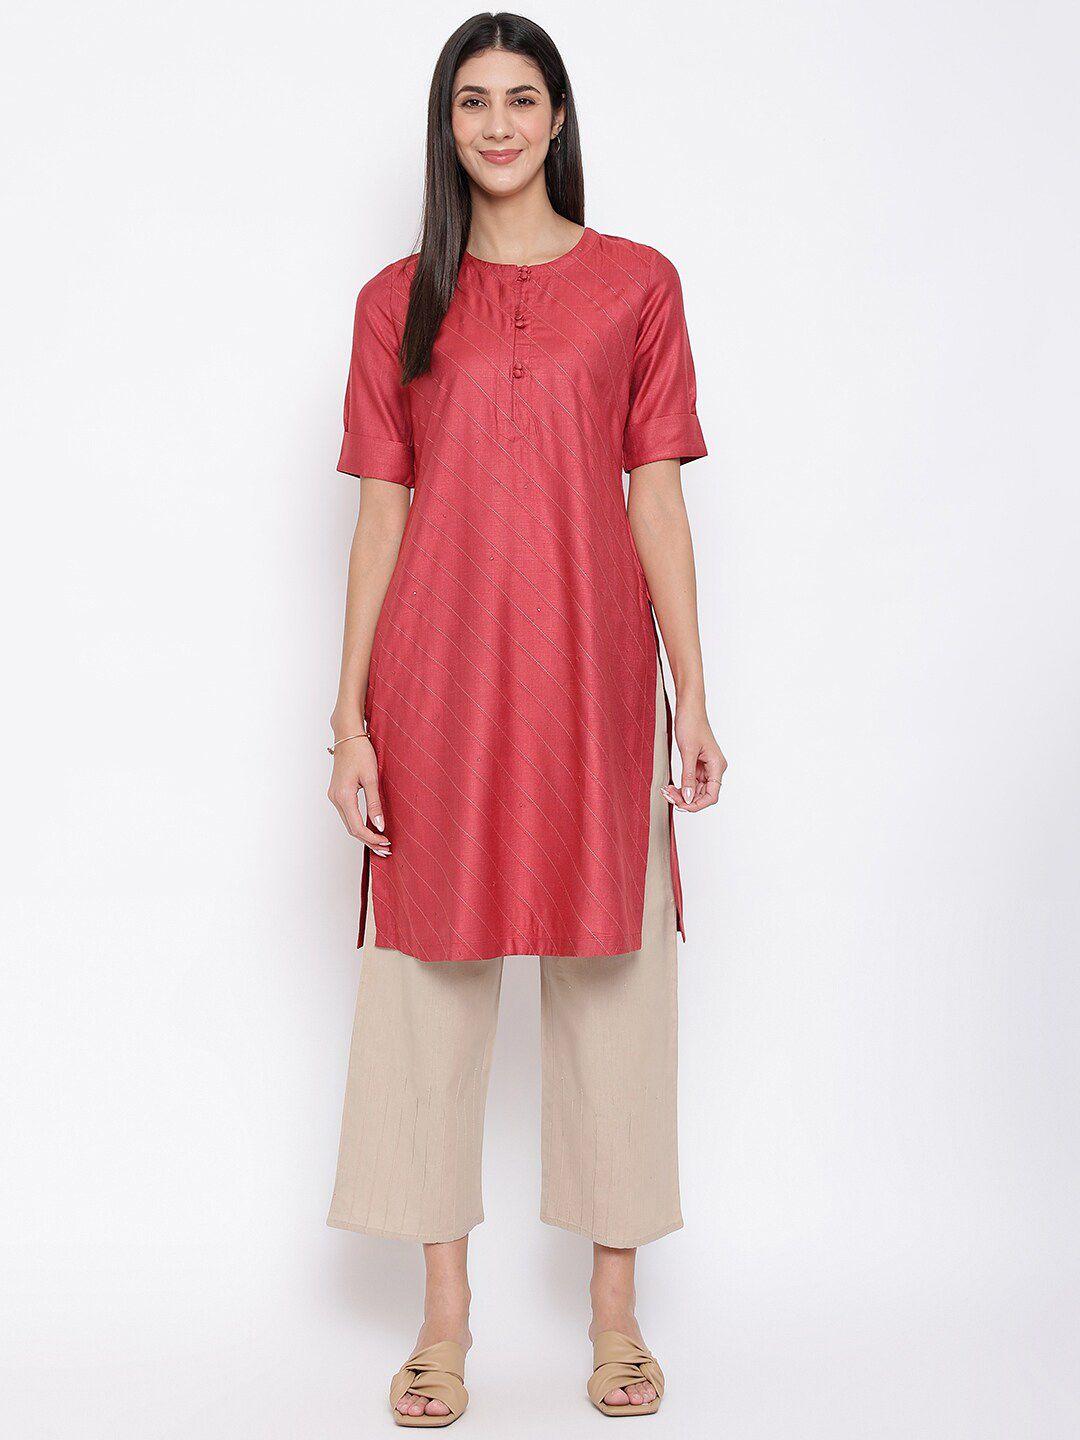 fabindia women red embroidered round neck straight kurta